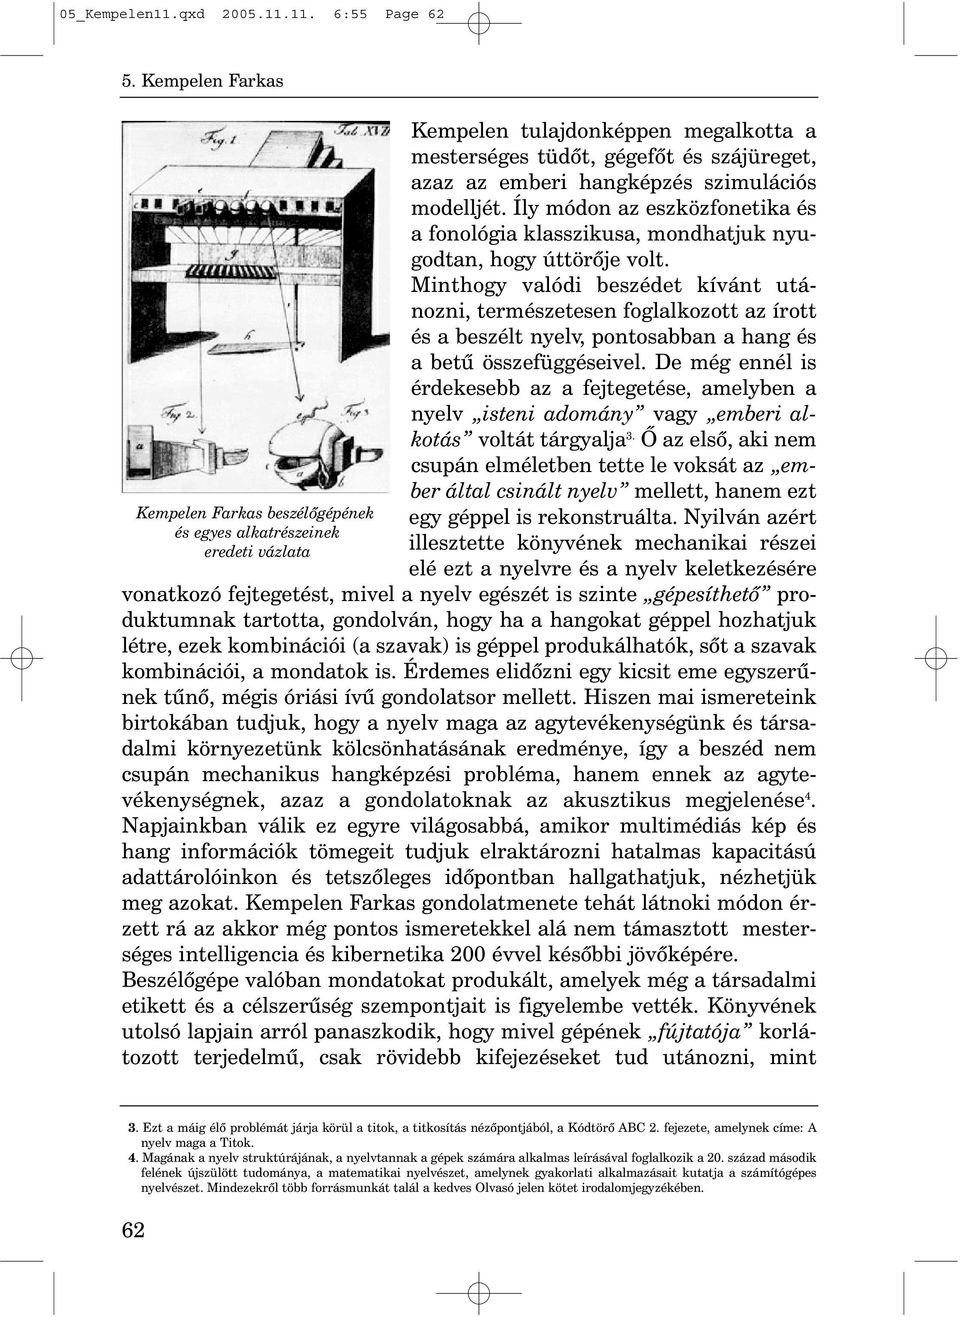 11. 6:55 Page 62 Kempelen Farkas beszélõgépének és egyes alkatrészeinek eredeti vázlata Kempelen tulajdonképpen megalkotta a mesterséges tüdõt, gégefõt és szájüreget, azaz az emberi hangképzés